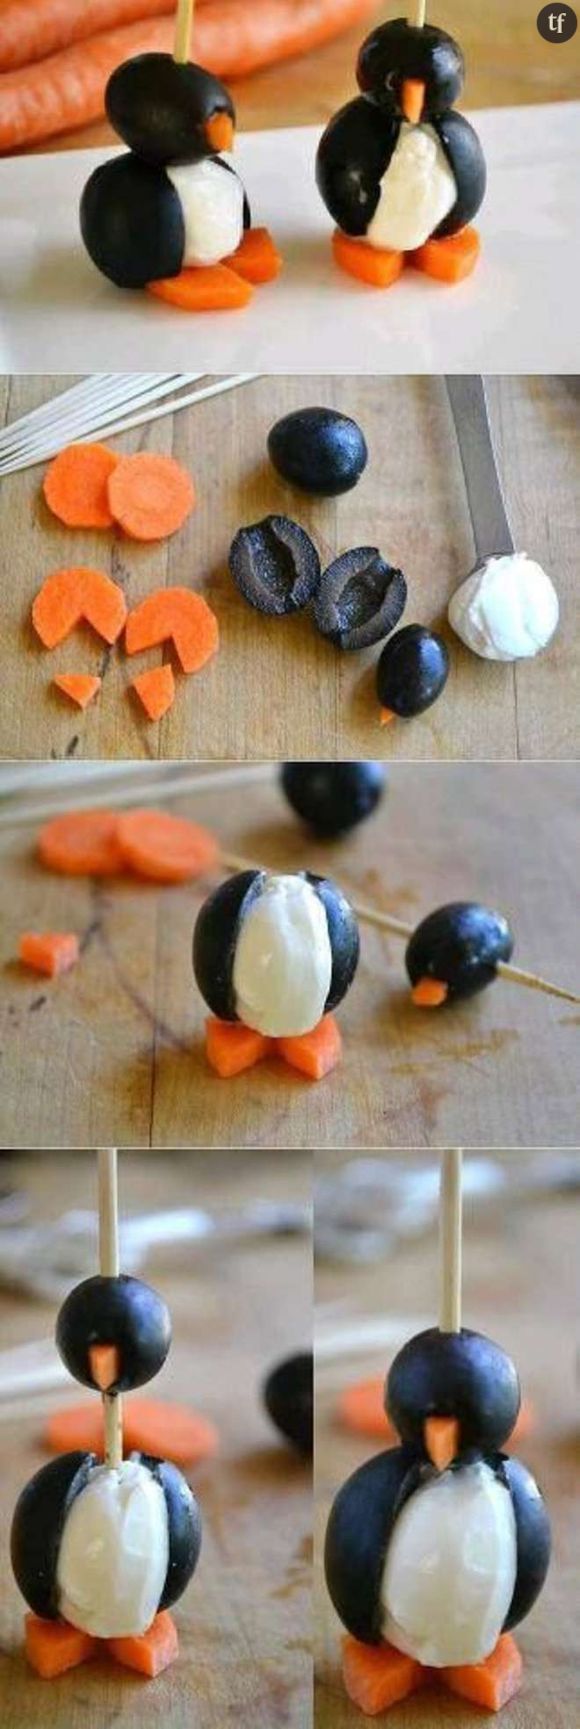 Des adorables pingouins en olive : original et super simple !